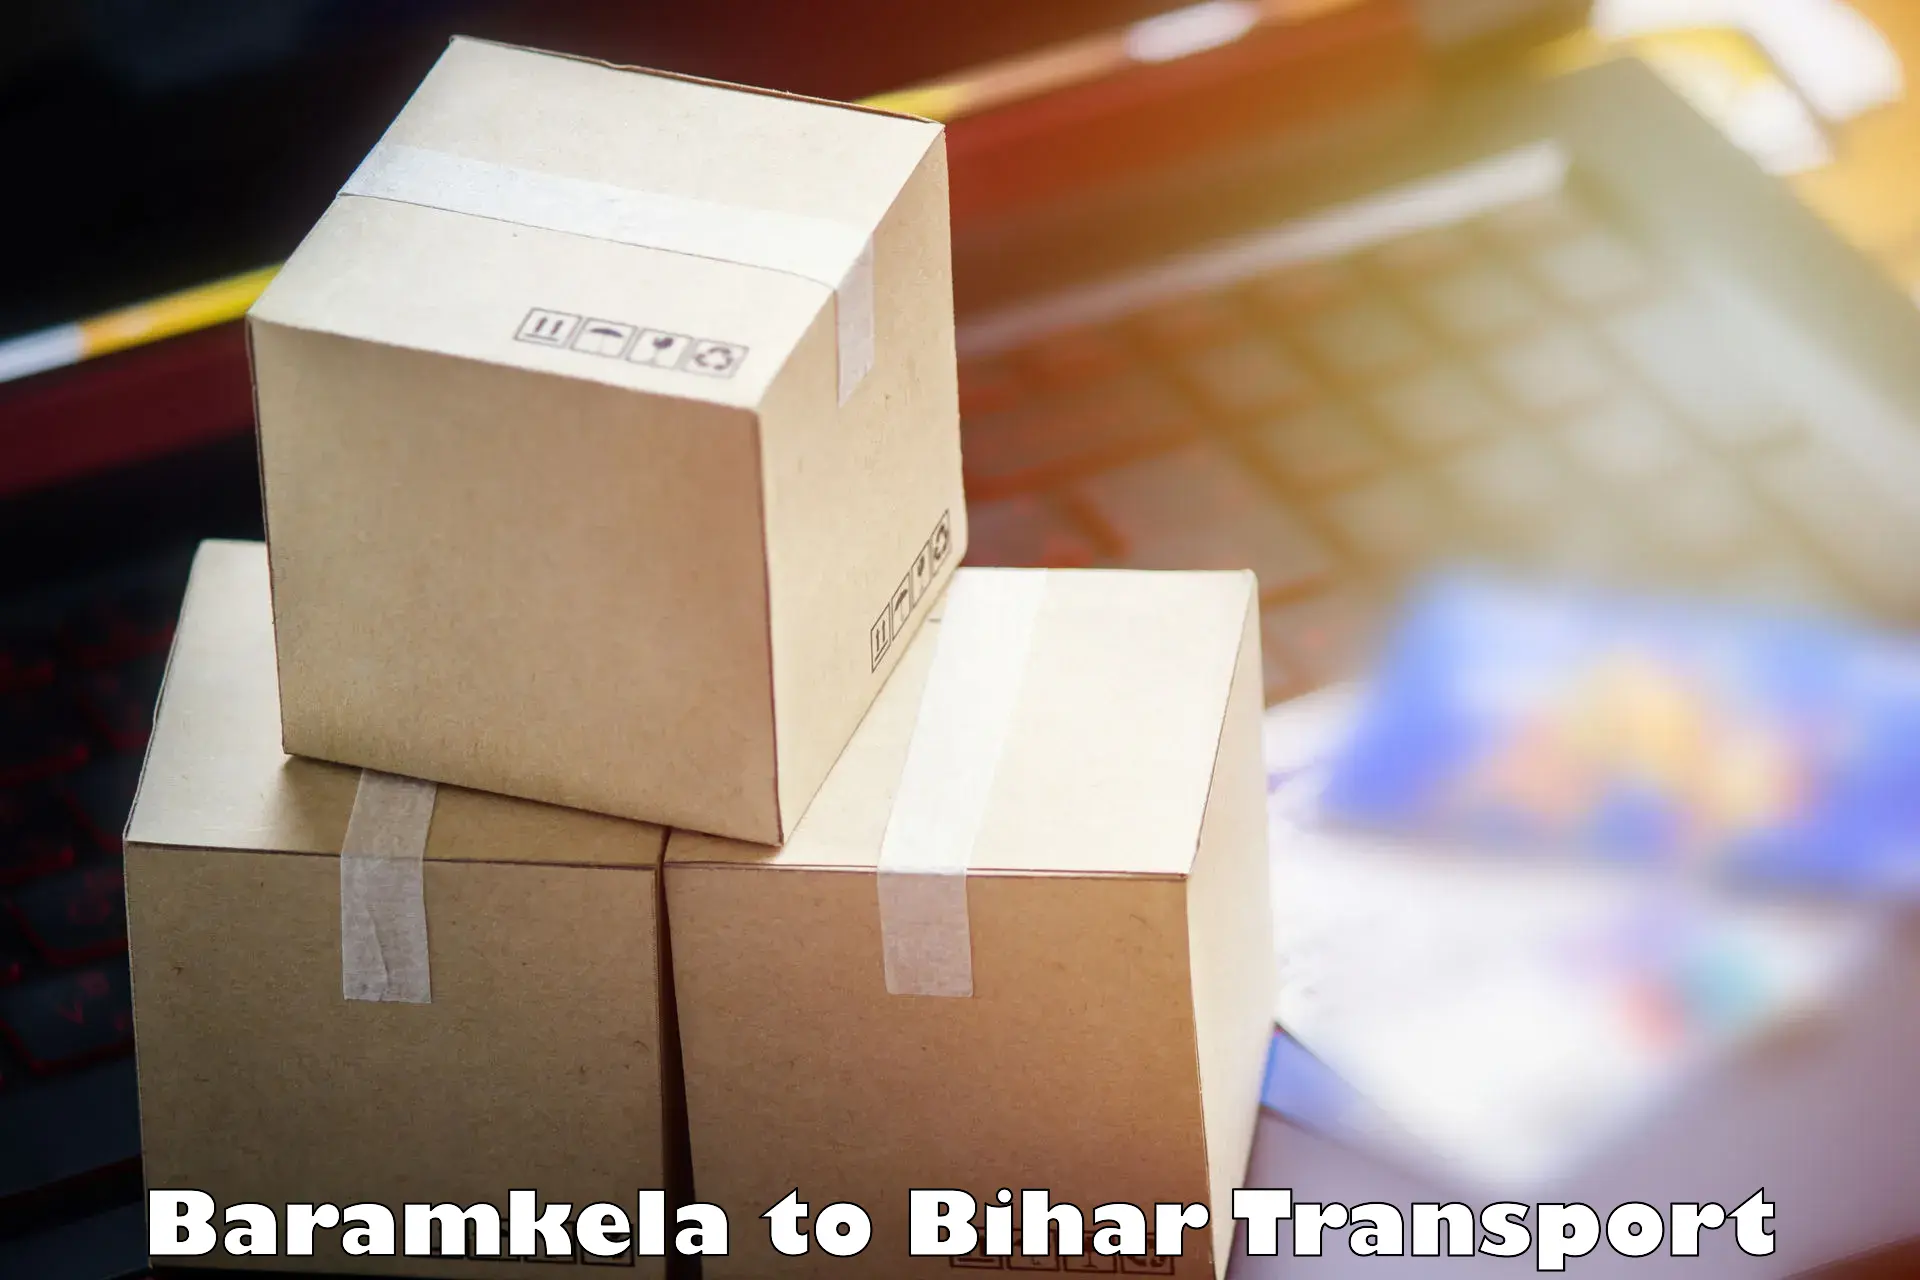 Scooty transport charges Baramkela to Lakhisarai